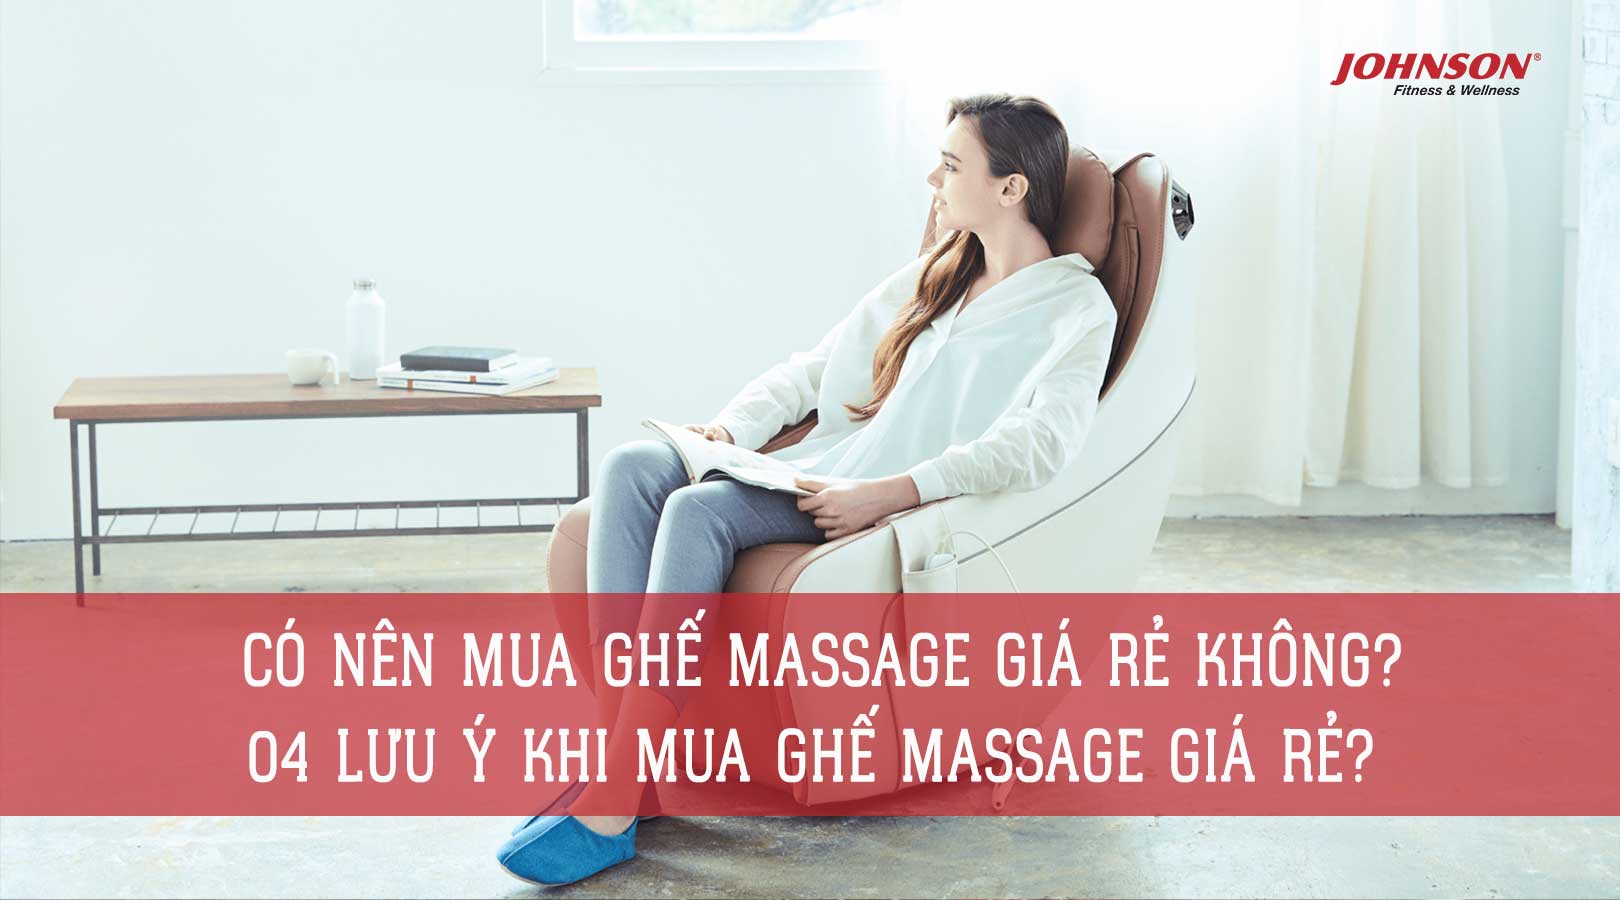 Có Nên Mua Ghế Massage Giá Rẻ Không? 04 Lưu Ý Khi Mua Ghế Massage Giá Rẻ?